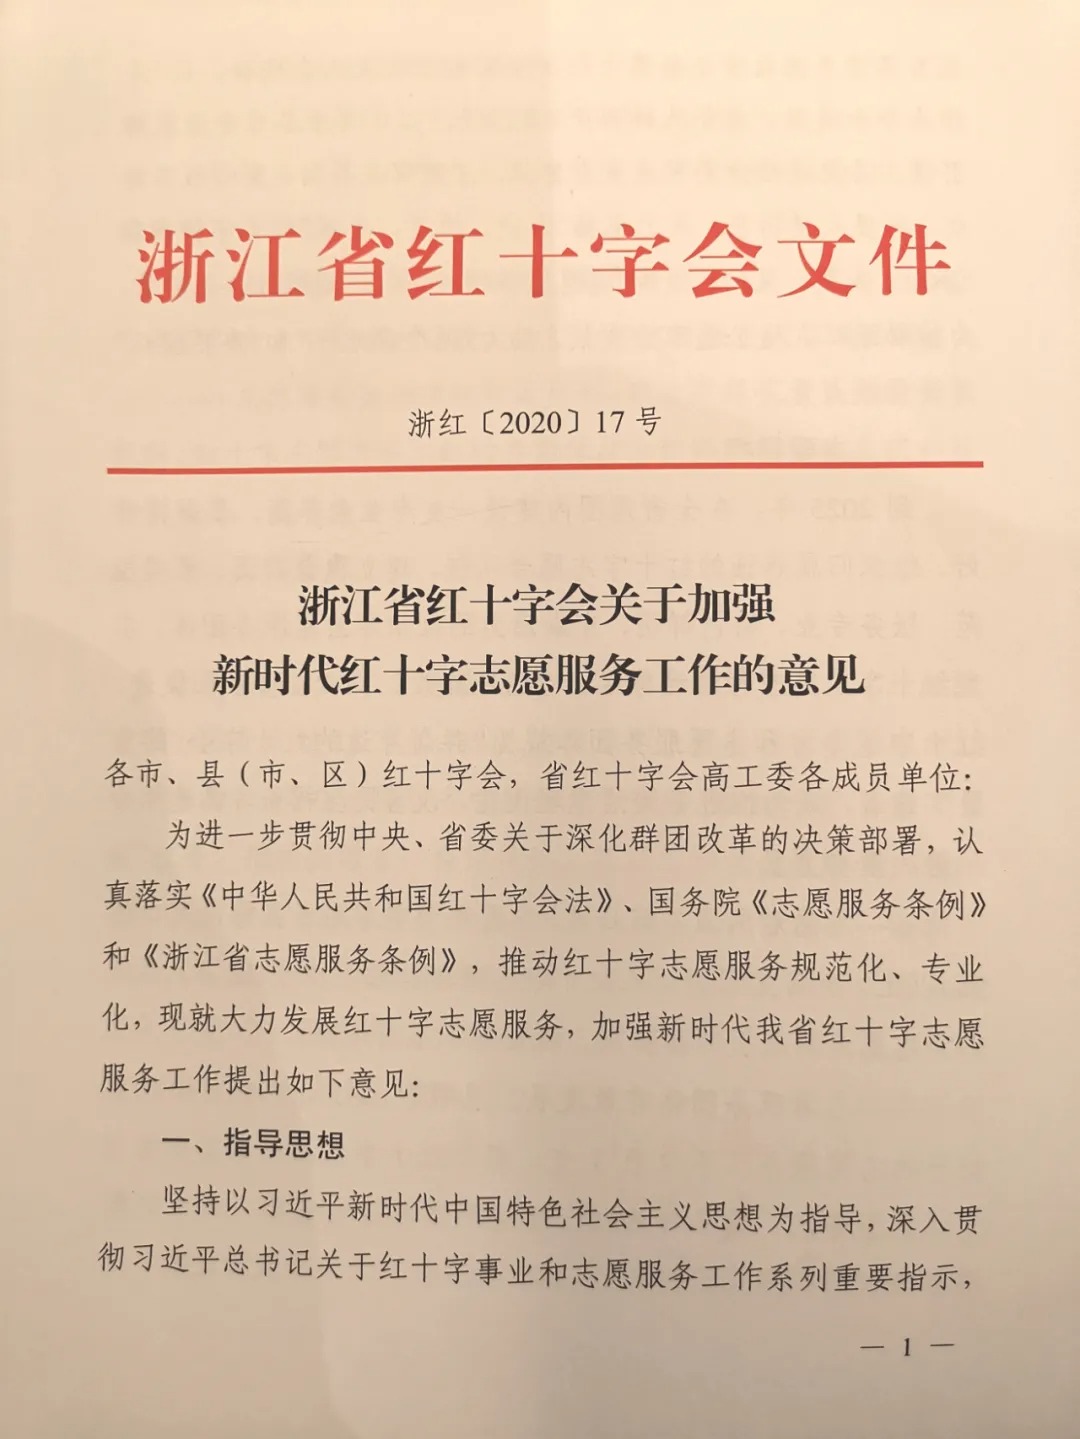 全省红十字系统志愿服务工作推进会在杭召开 新闻动态 第2张